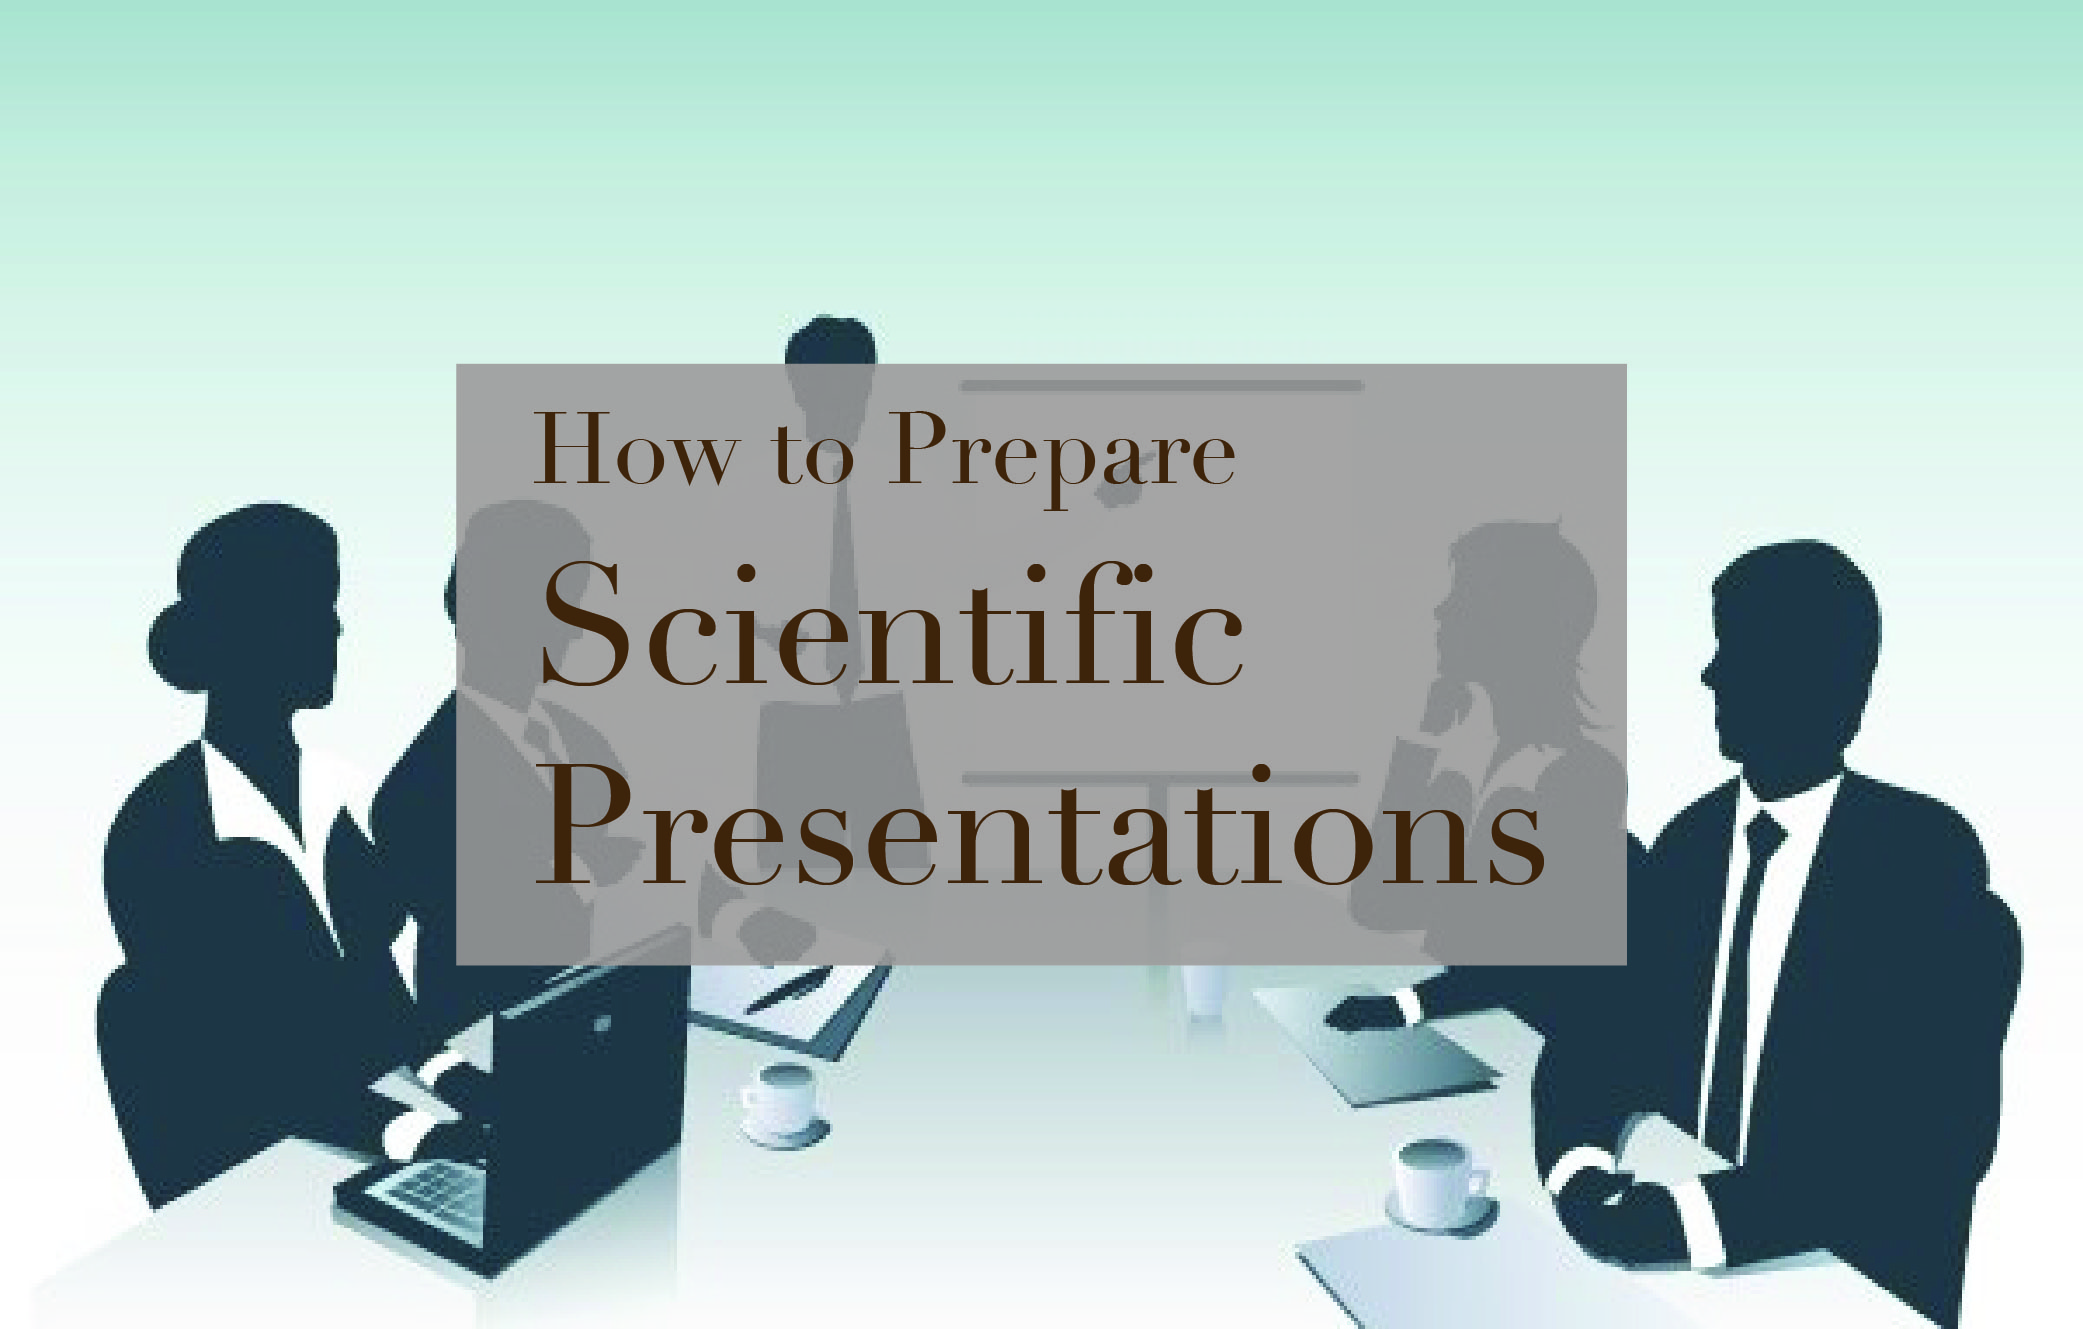 آموزش تهیه ارایه های علمی- How to make scientific presentations